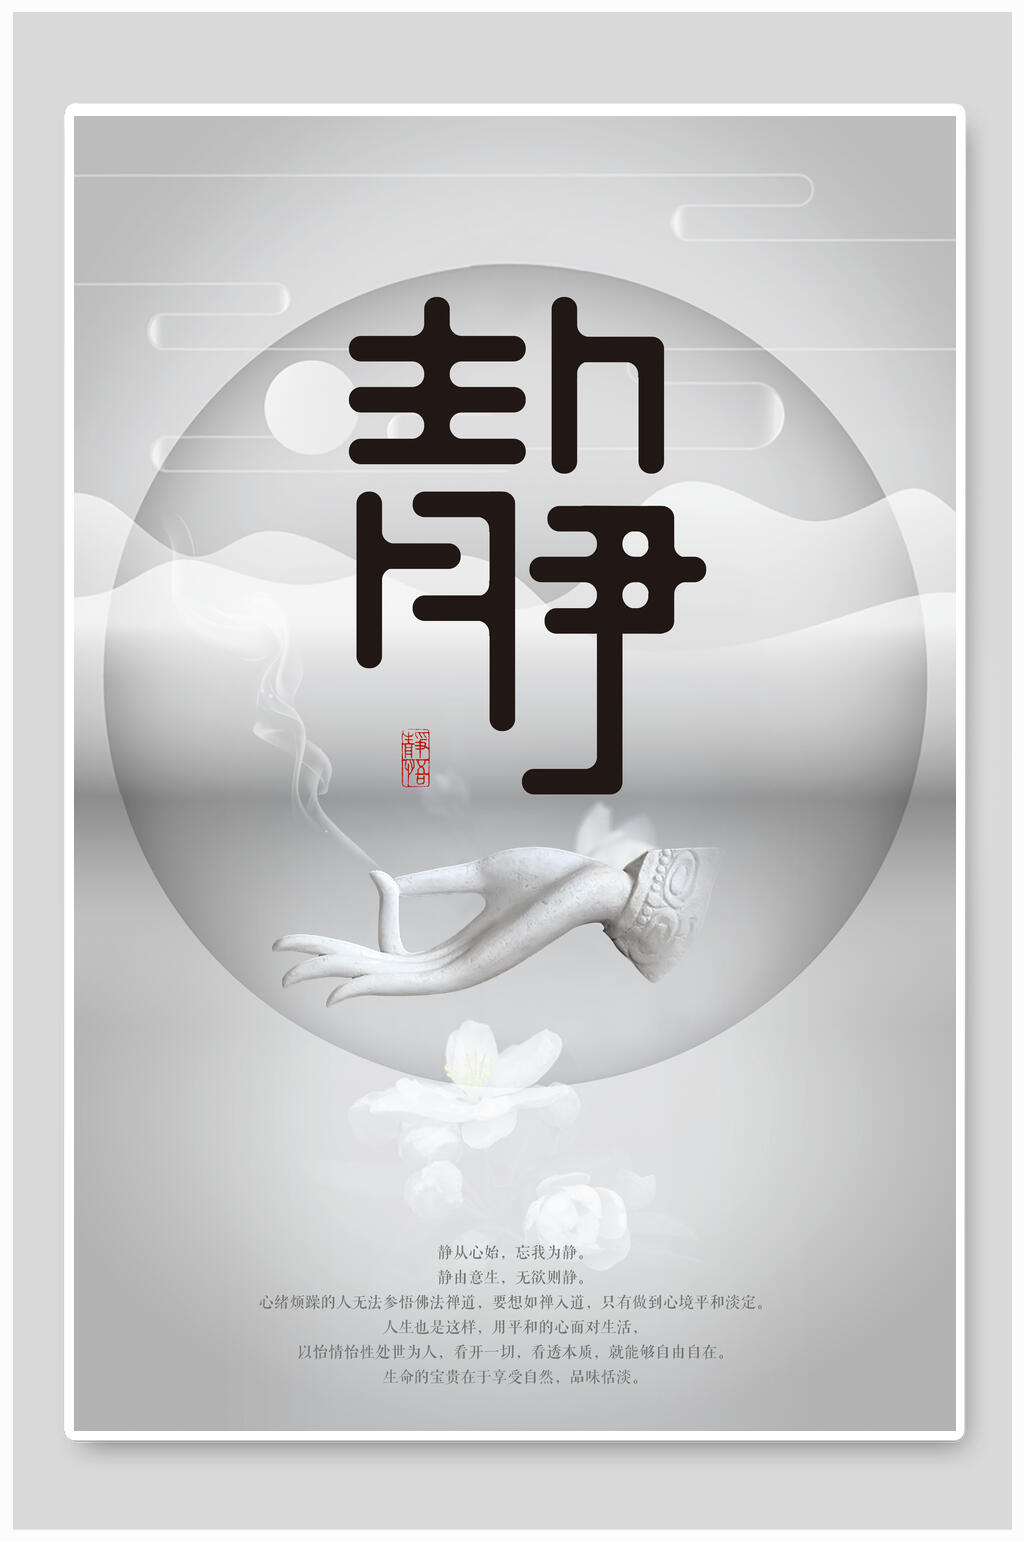 唯美单身派对海报设计喜庆牛气冲天主题字海报立即下载创意10周年庆